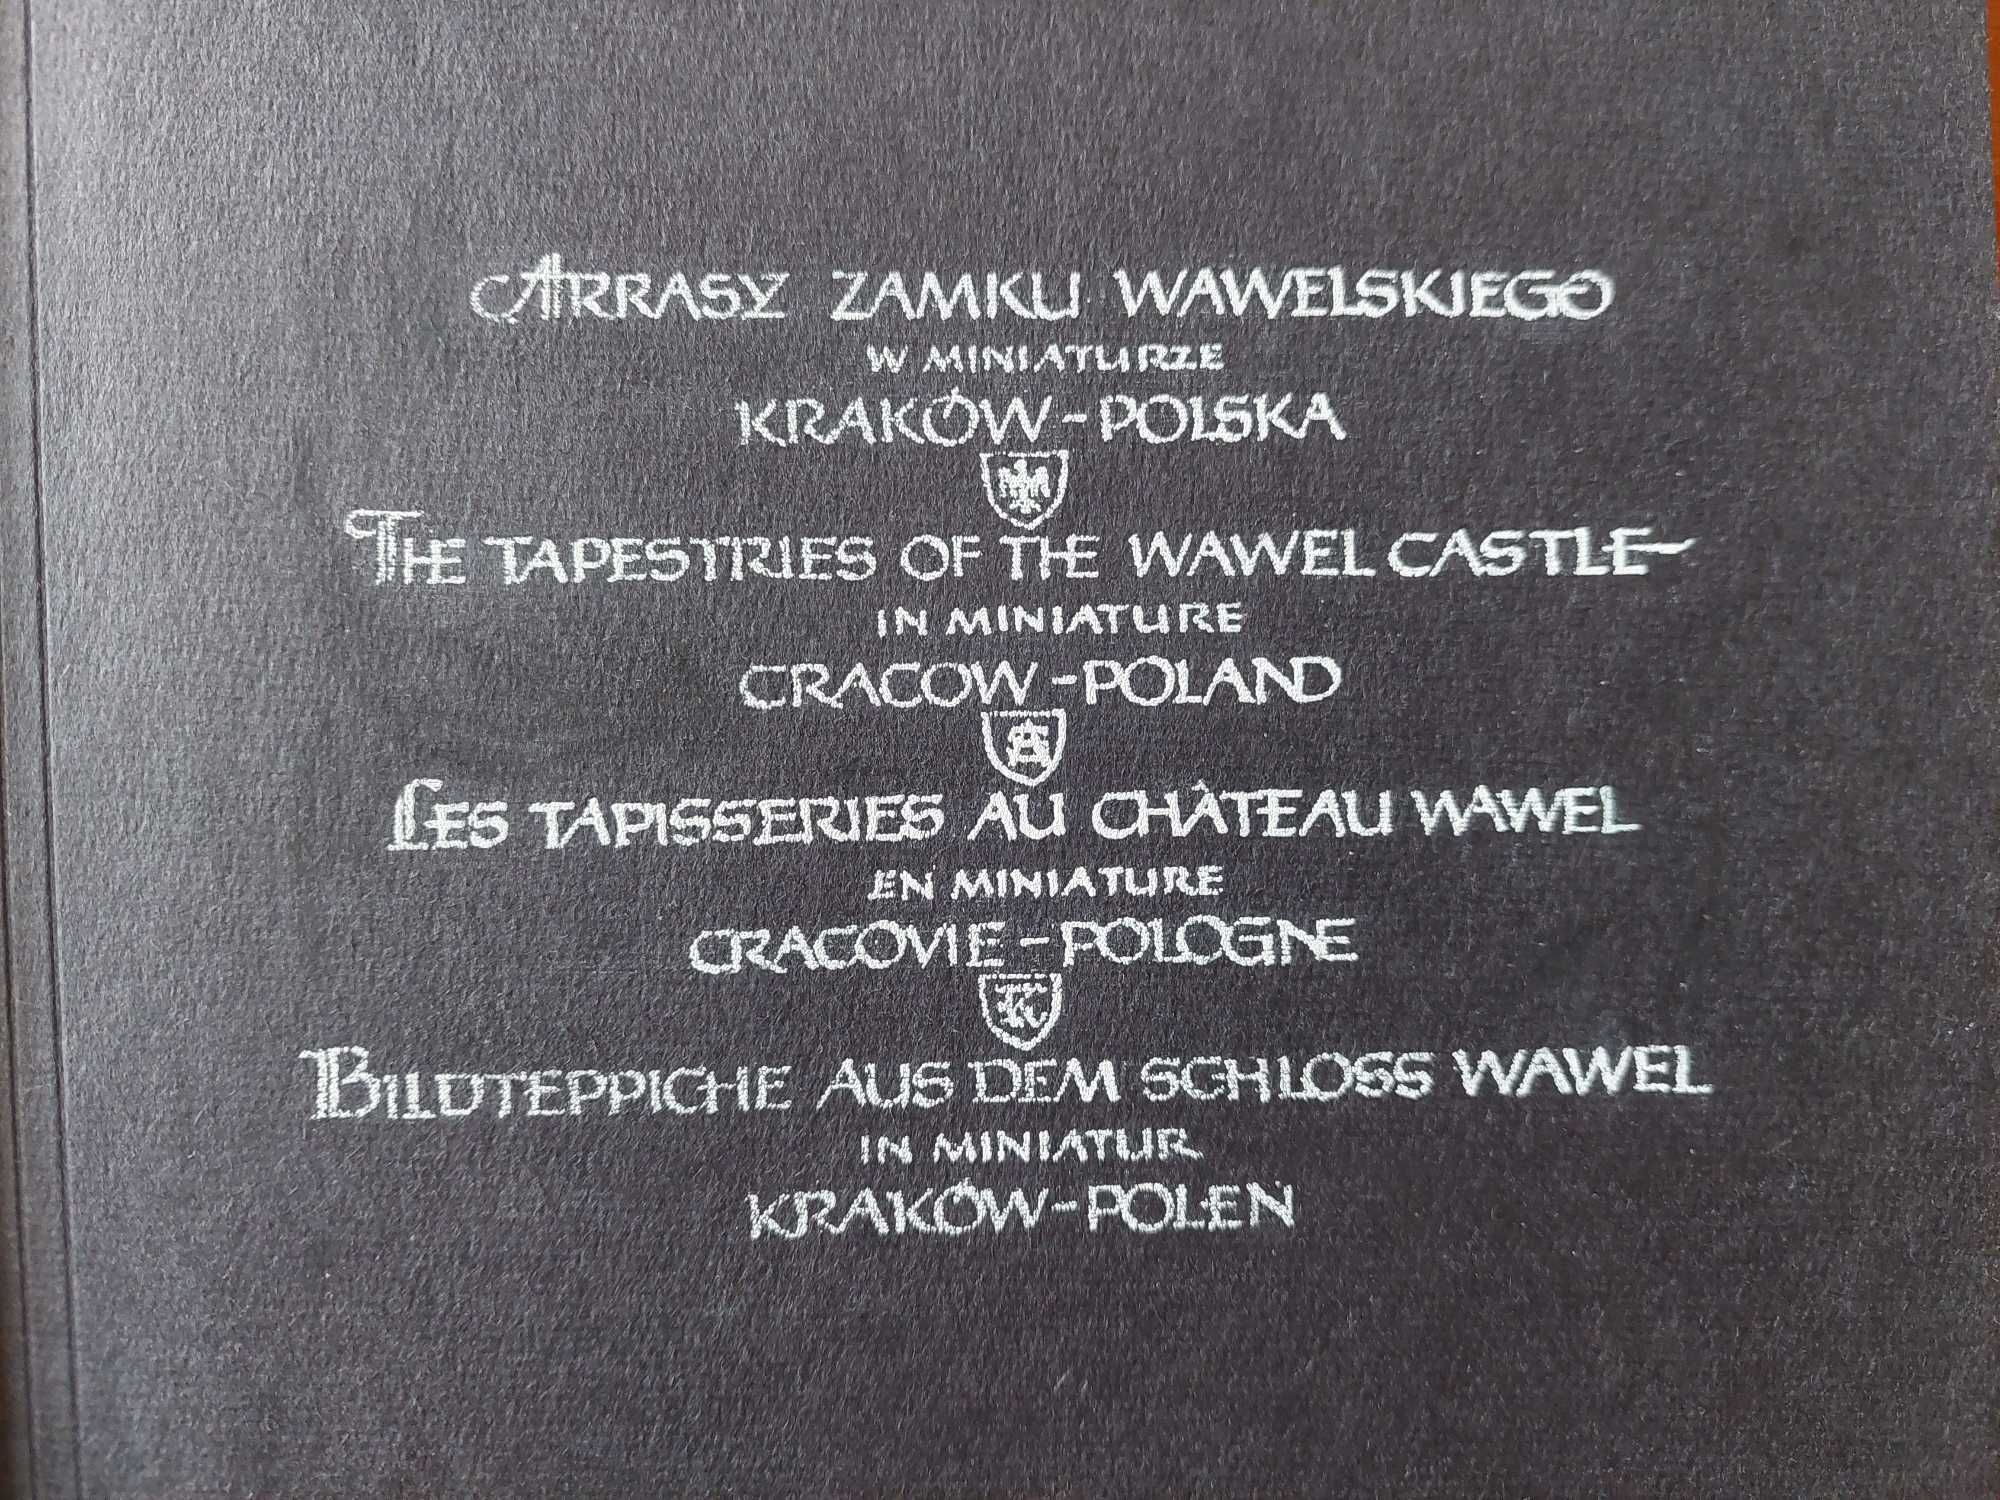 ARRASY wawelskie - 2 albumy